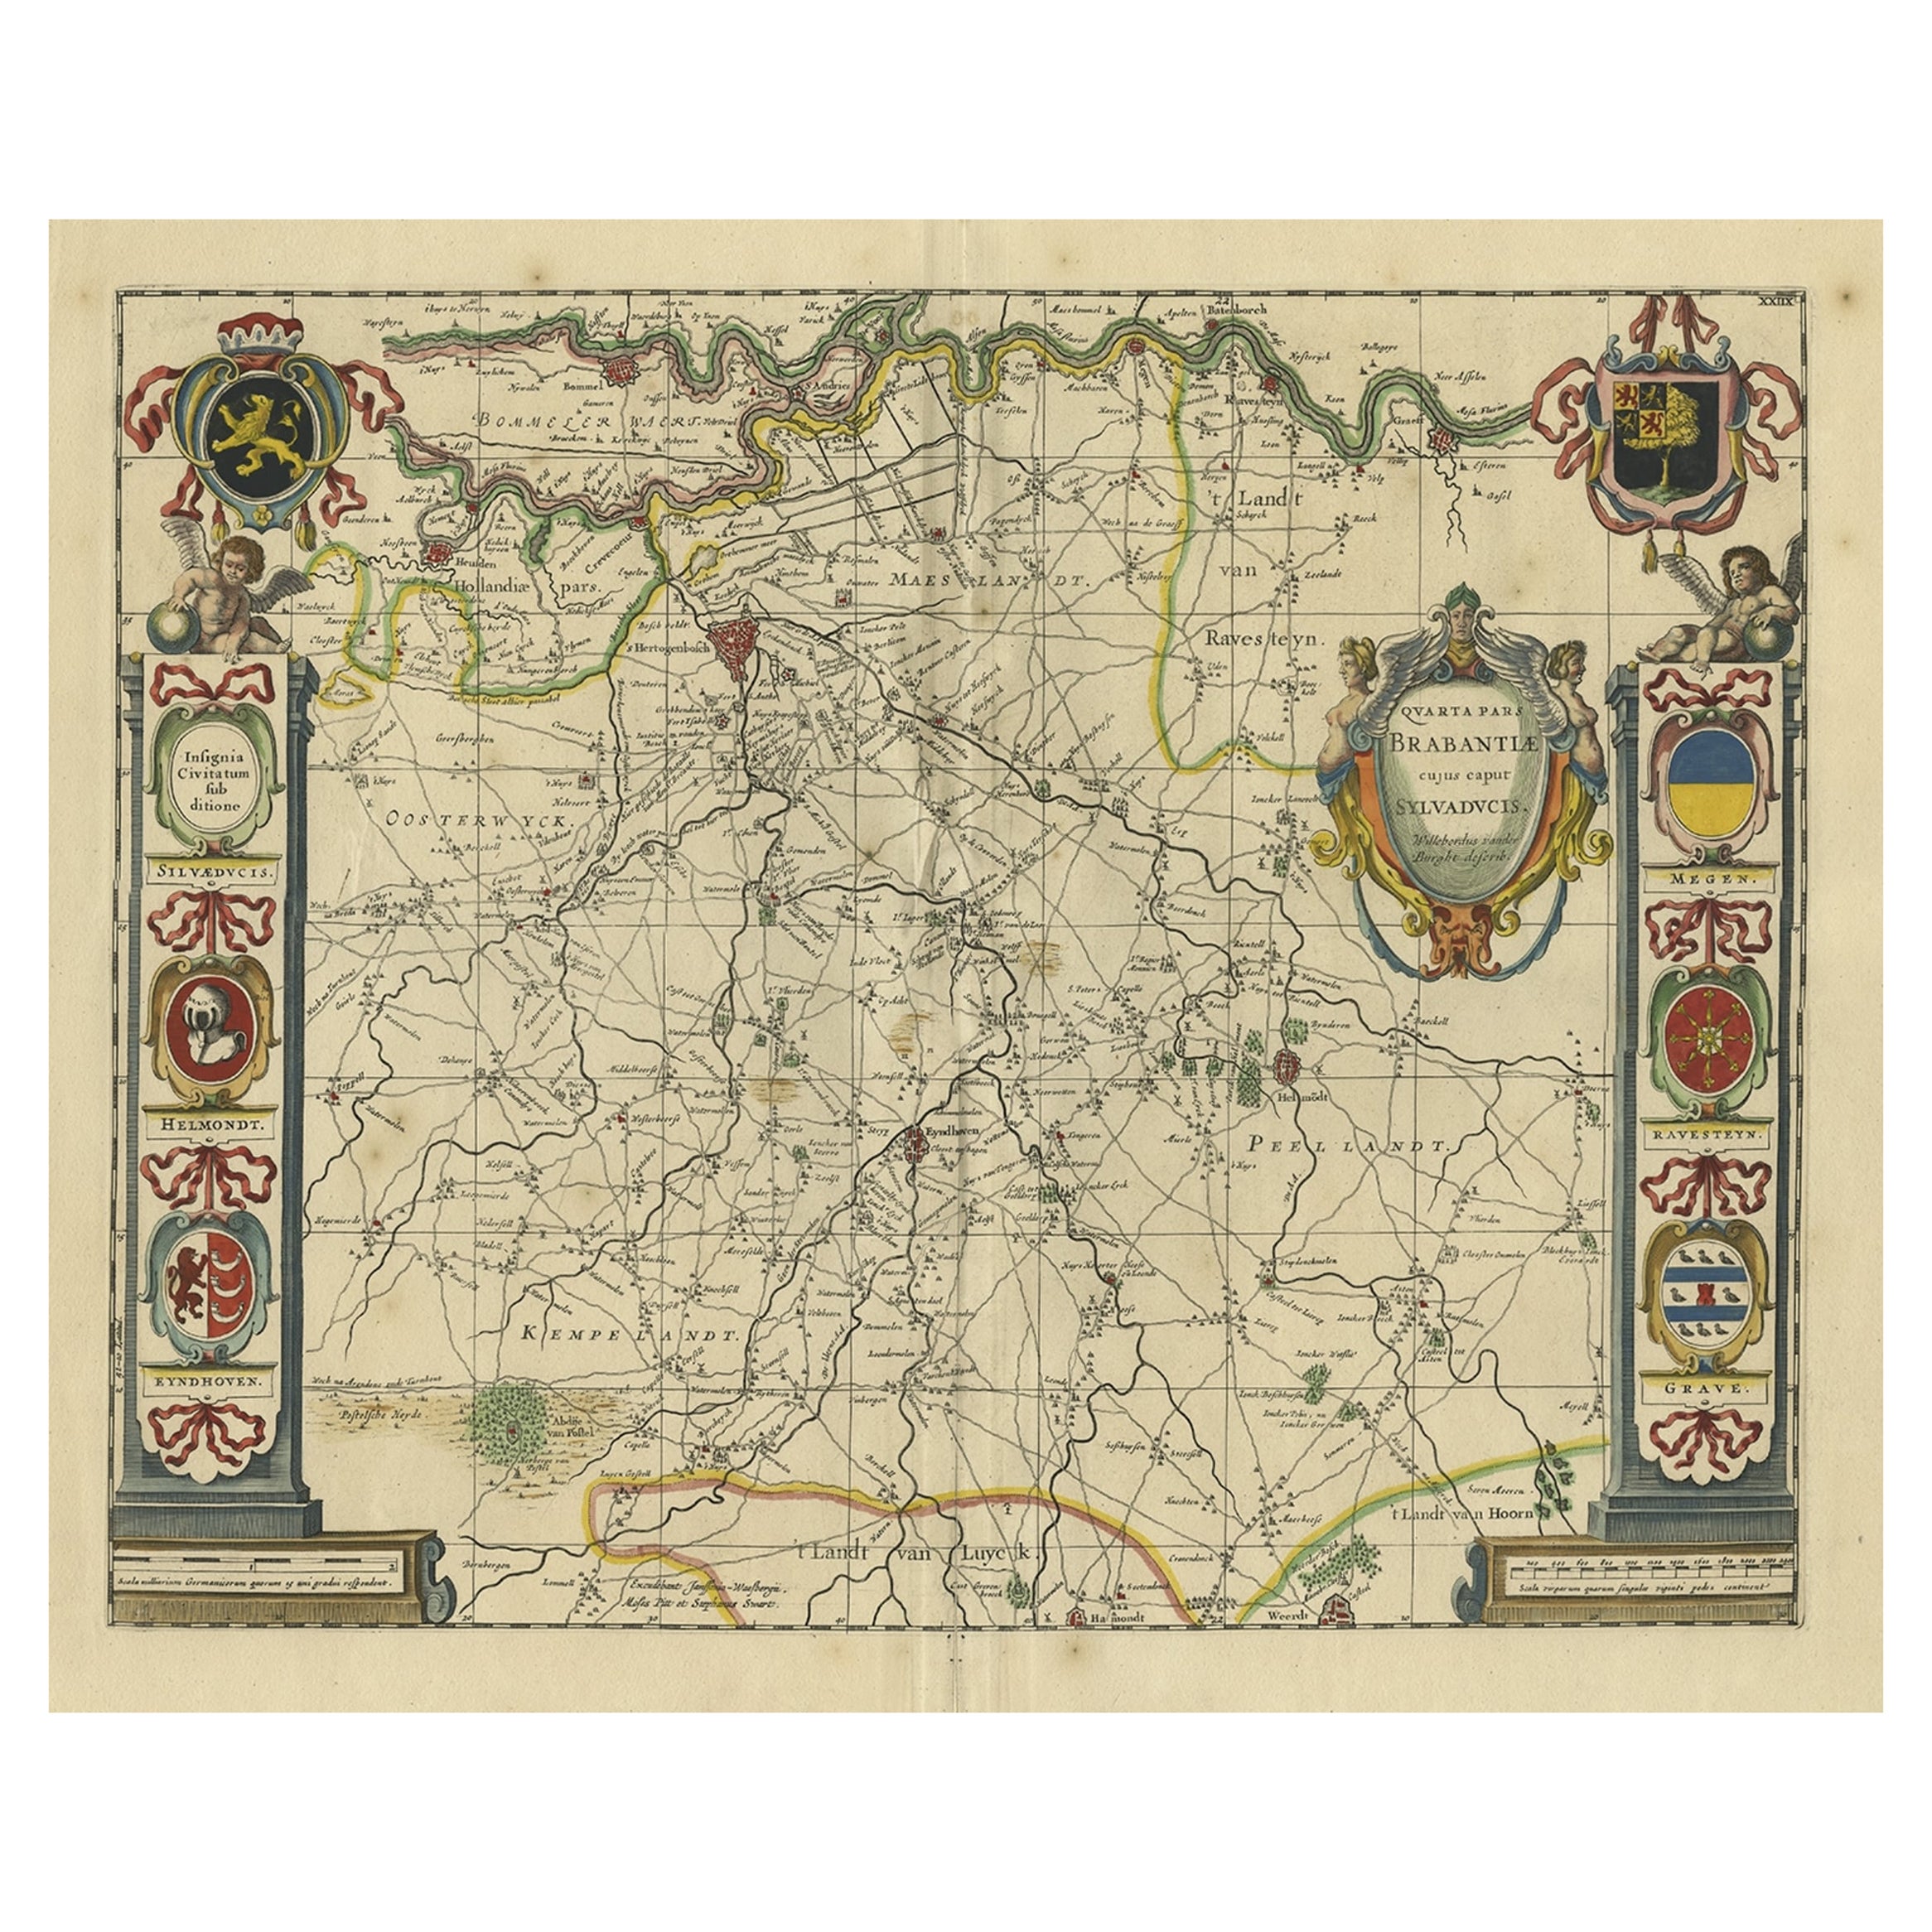 Carte décorative ancienne de la province néerlandaise du Noord-Brabant, vers 1640